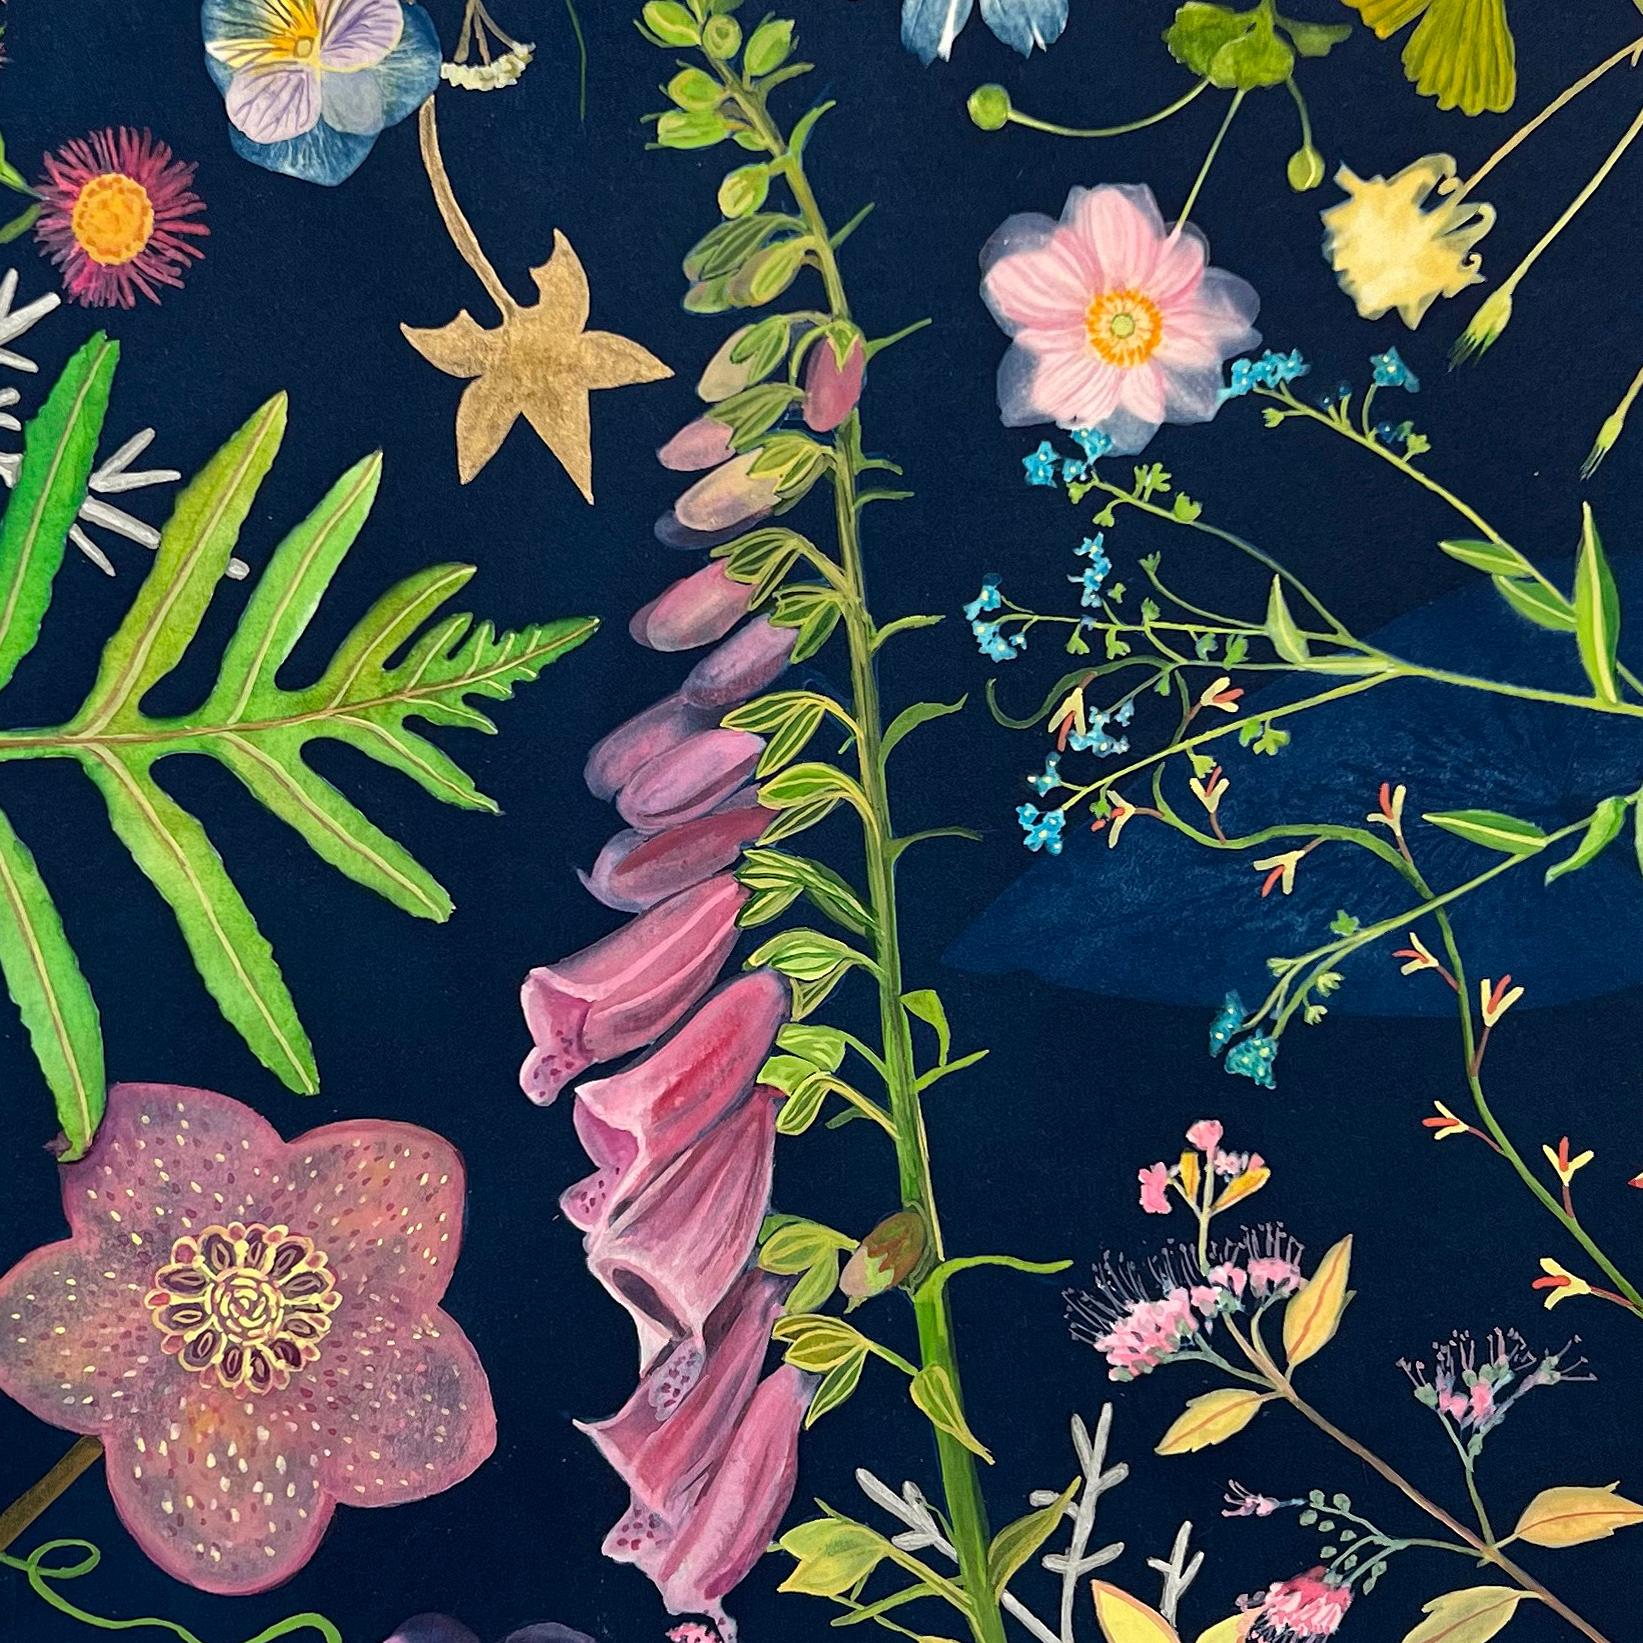 Realistisches Stillleben mit bunten Blumen auf Blau, gemalt mit Cyanotypie, Aquarell, Tusche und Gouache
